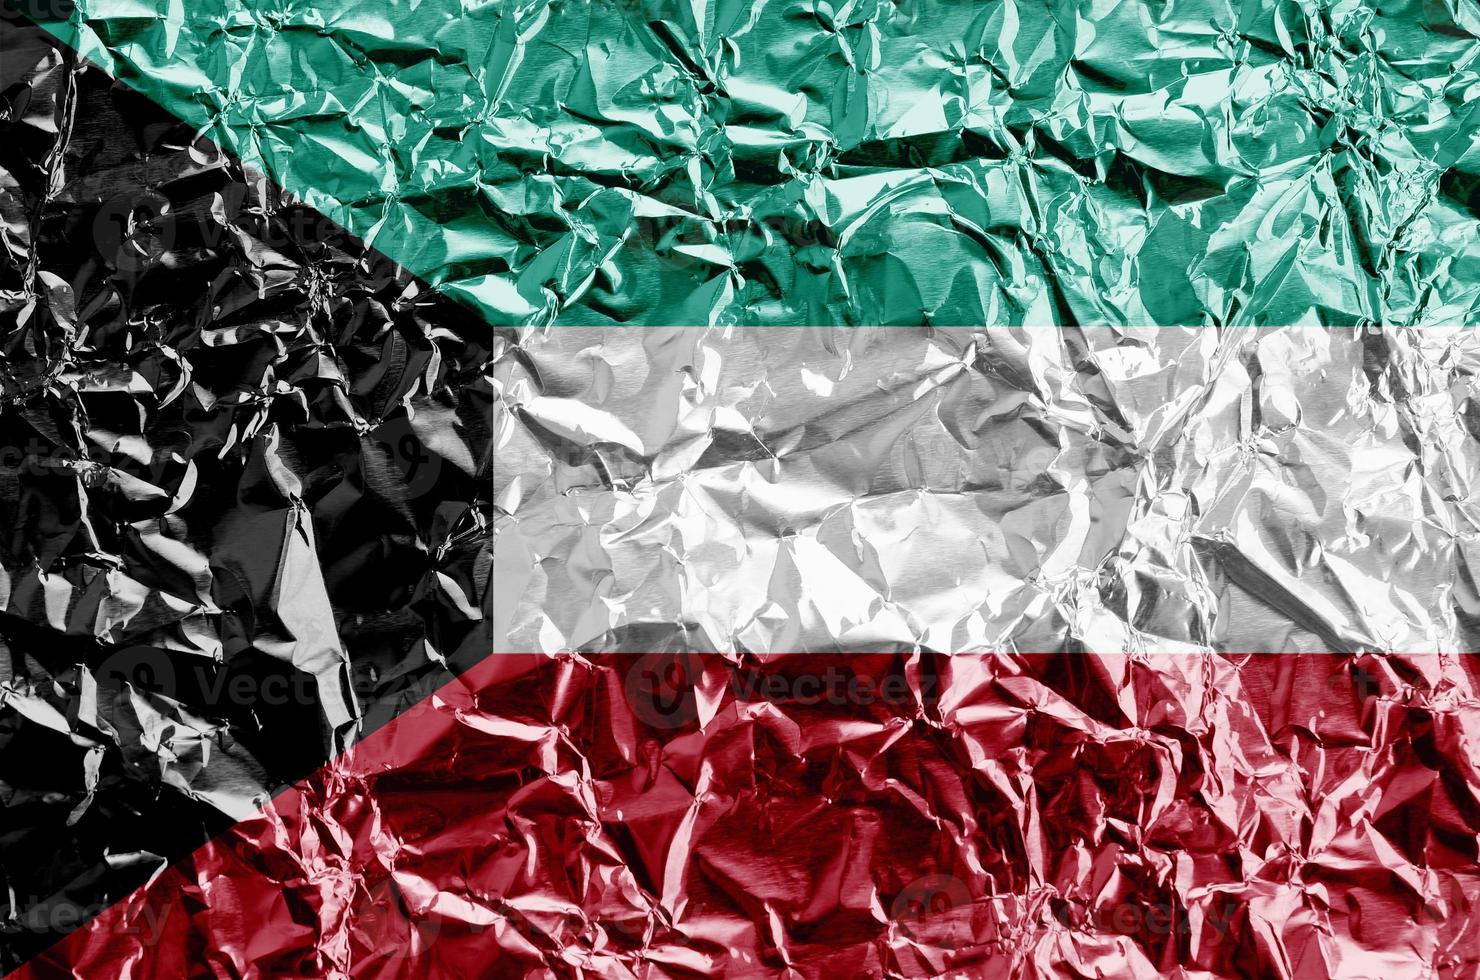 bandeira do kuwait retratada em cores de tinta em closeup de folha de alumínio amassado brilhante. banner texturizado em fundo áspero foto